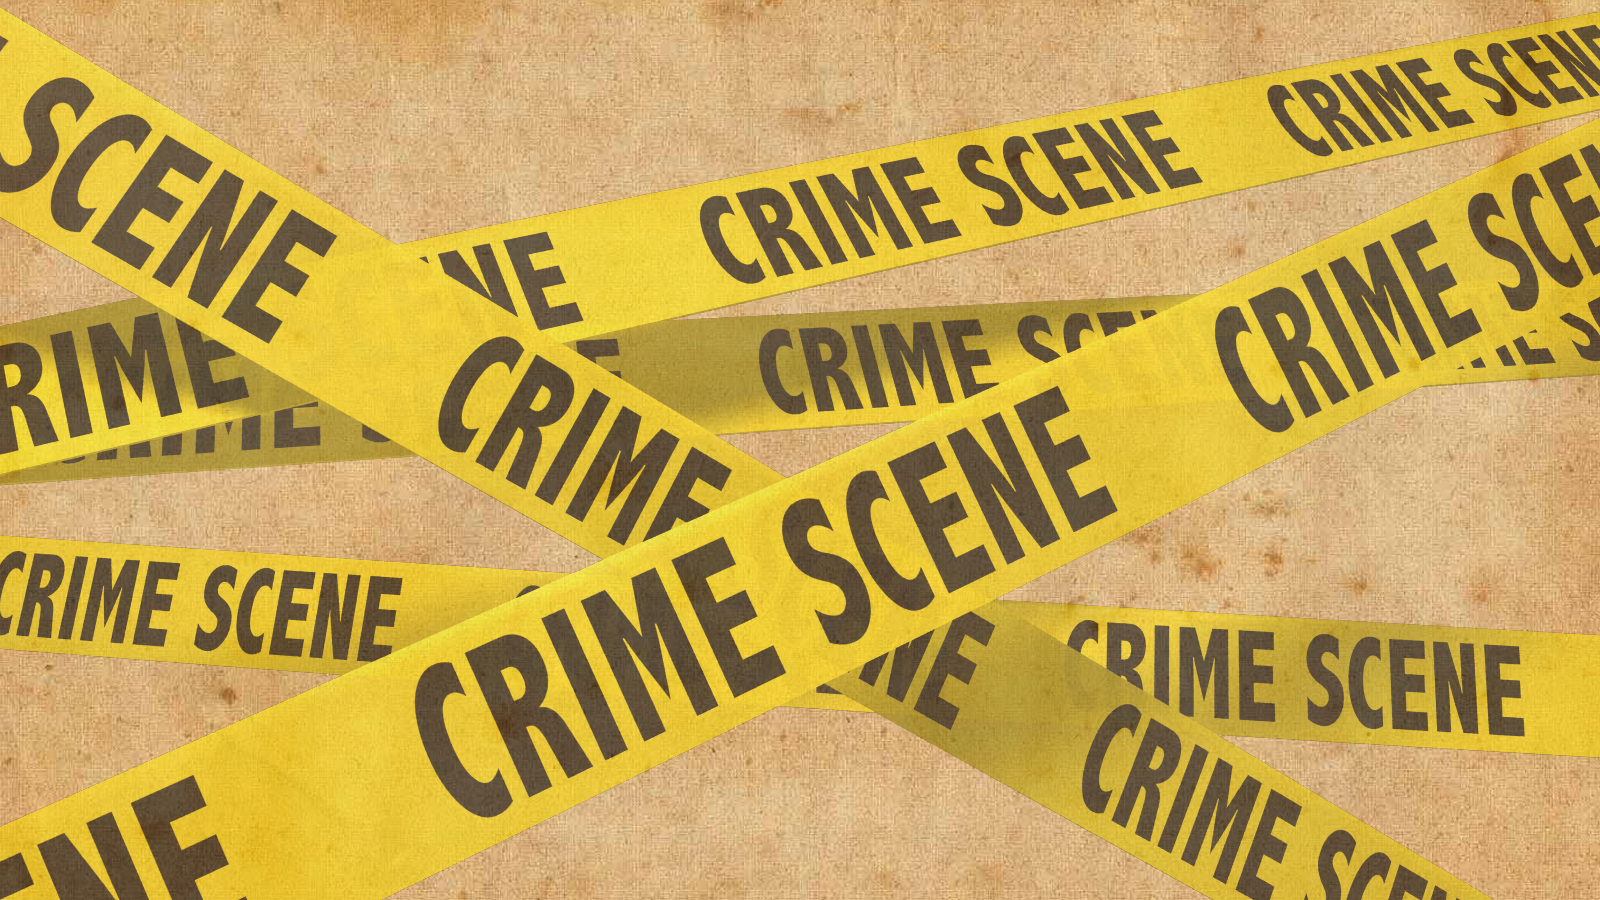 Crime scene investigations